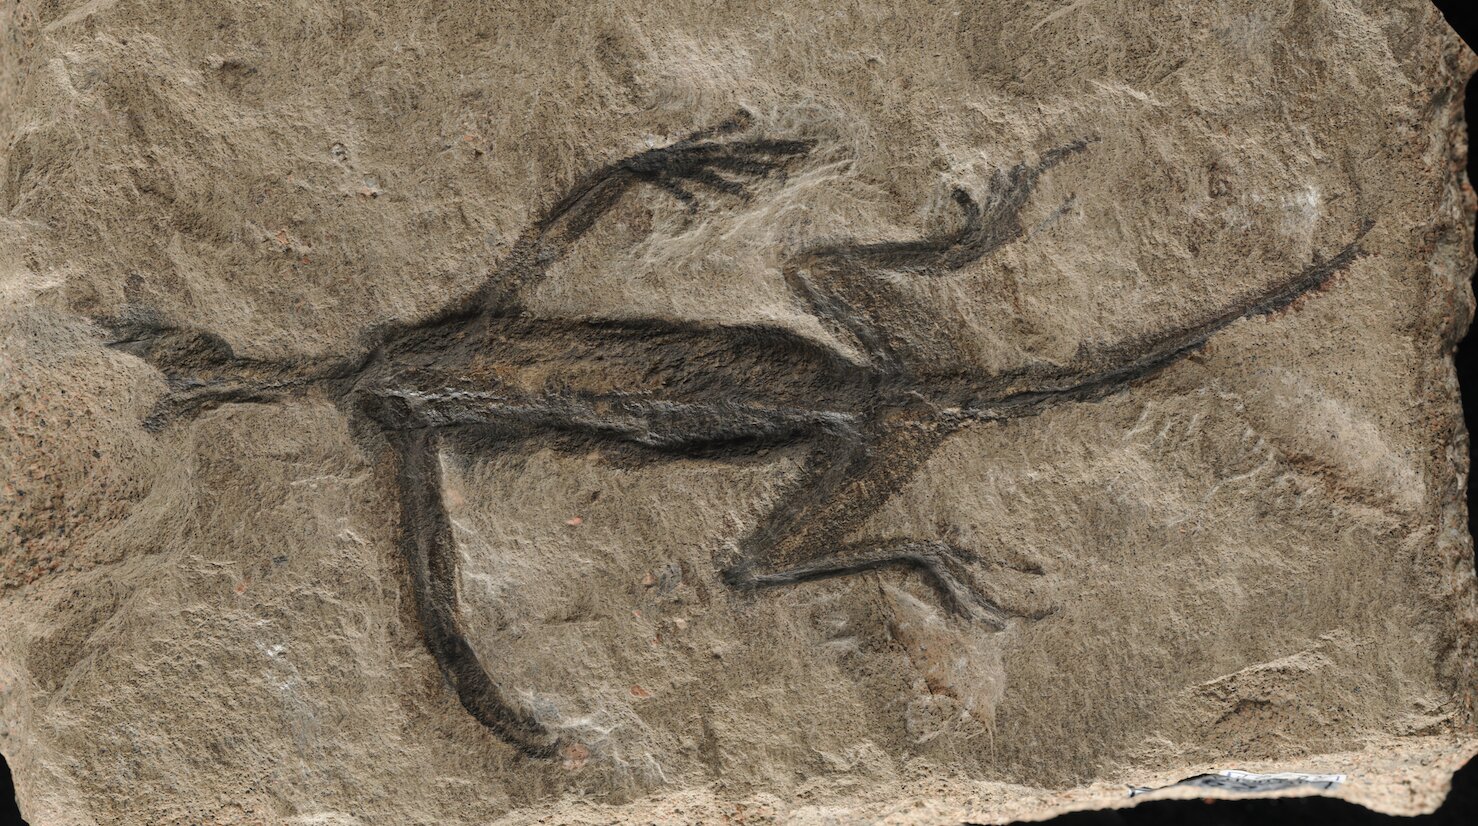 L'analisi paleontologica dimostra che il famoso pensiero fossile dimostra che la conservazione dei tessuti molli è in realtà solo un rivestimento